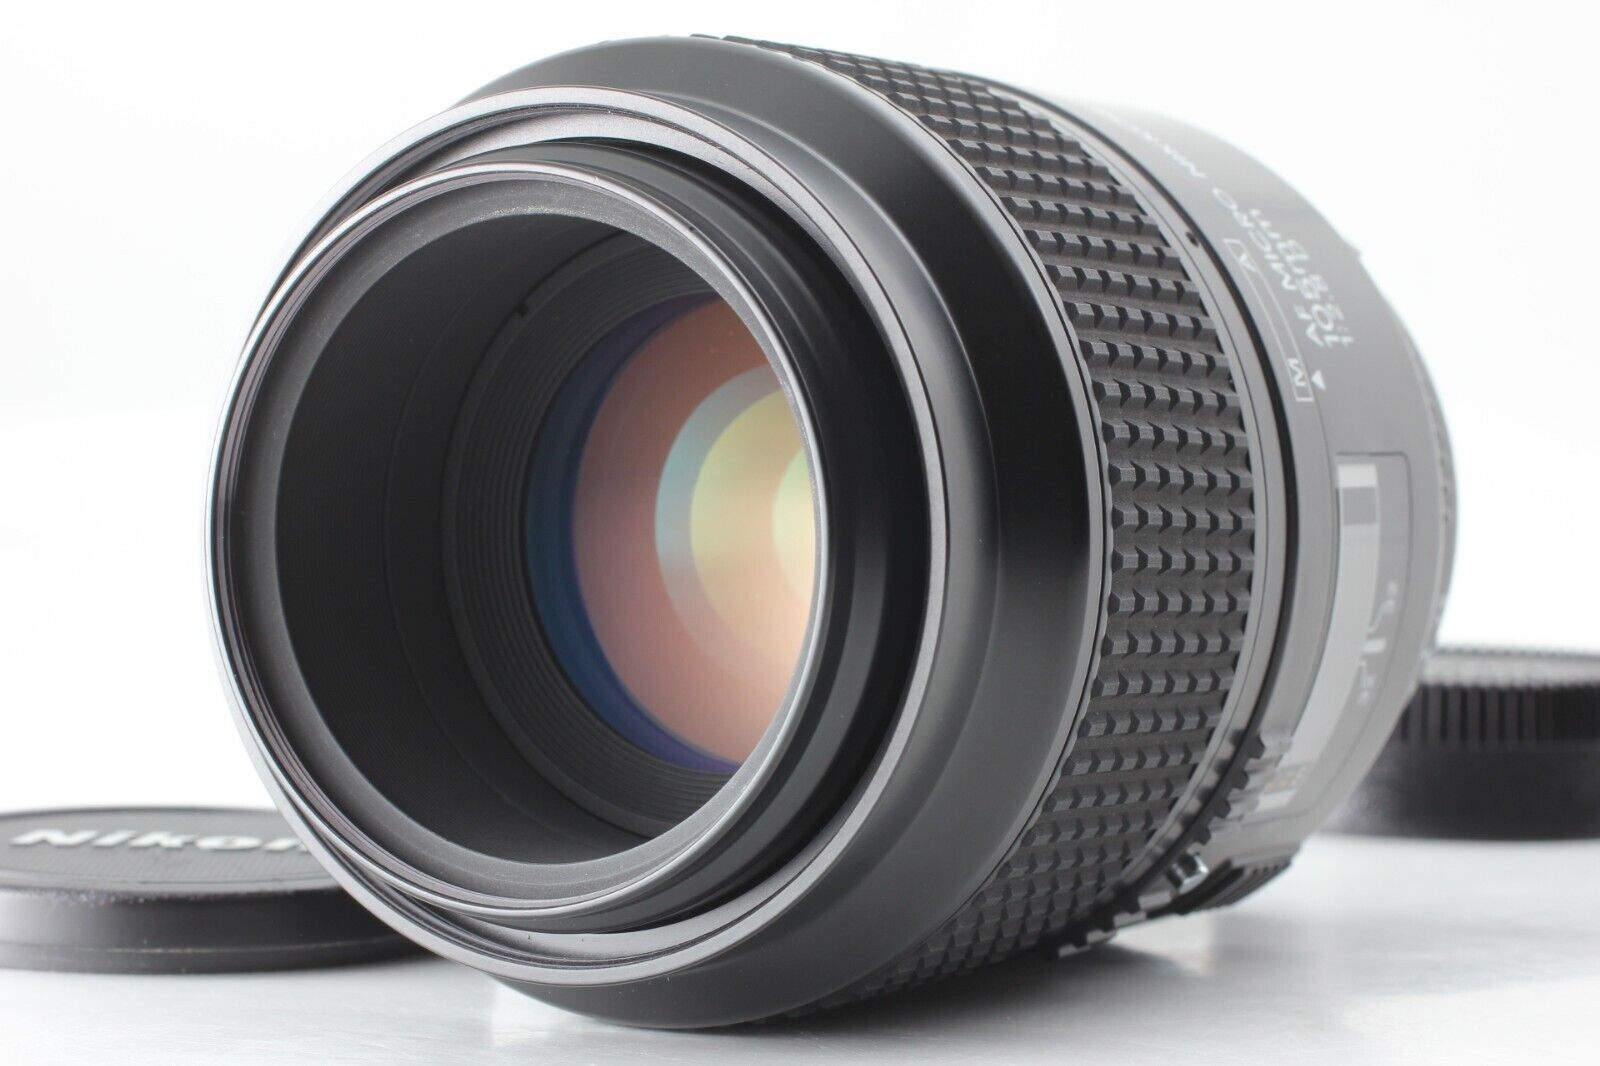 Nikon AF Micro Nikkor 105mm f/2.8 D Macro